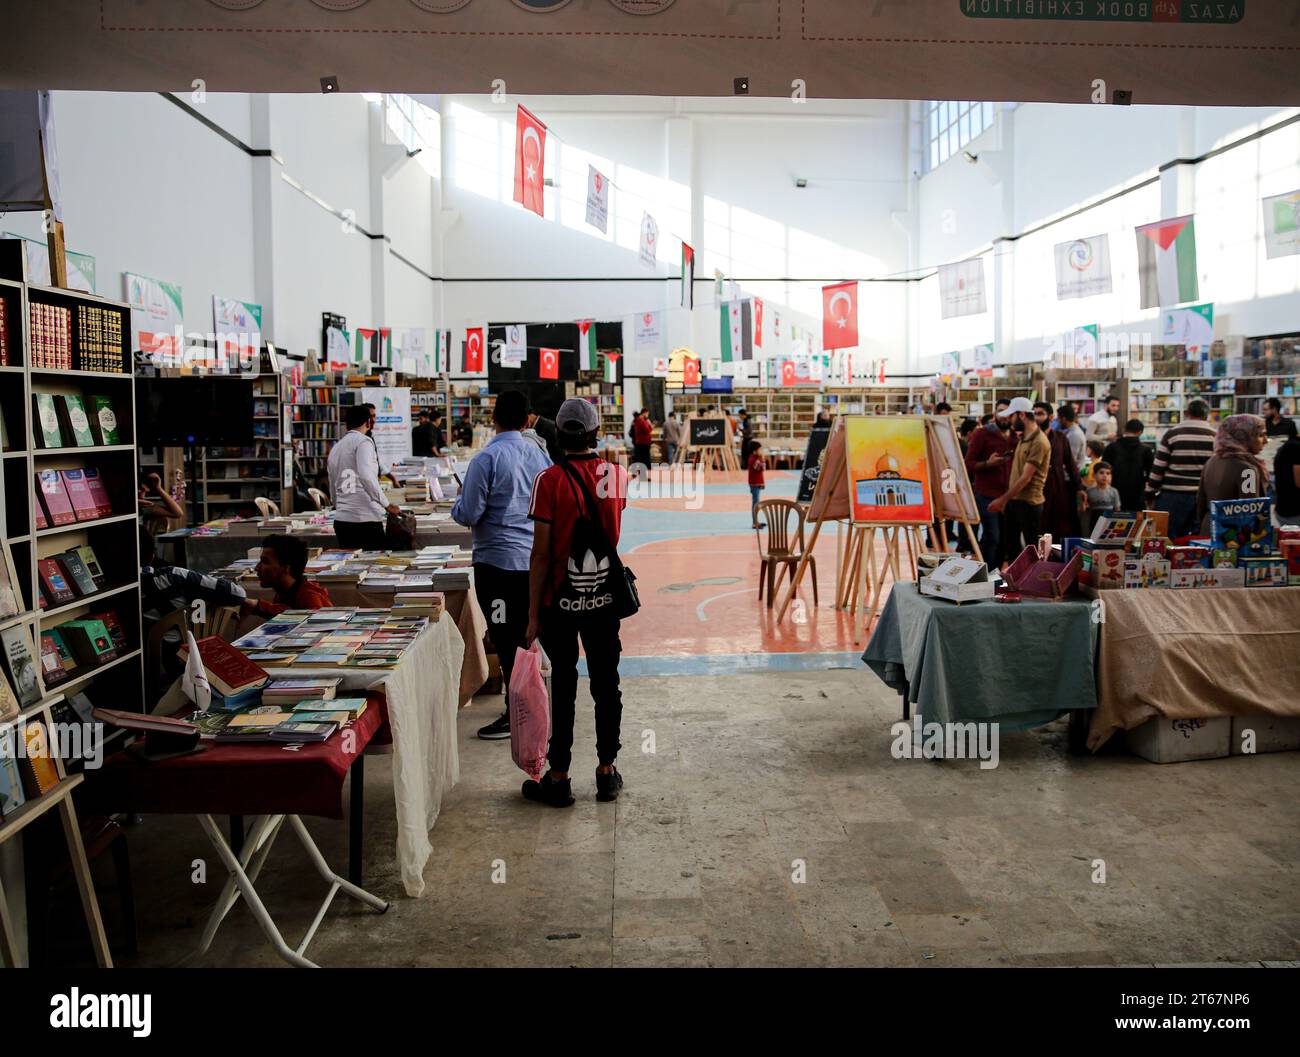 9. November 2023: Azaz, Syrien. November 2023. Die vierte Azaz Buchmesse findet in der Stadt Azaz nordwestlich von Aleppo statt. Die Buchmesse präsentierte eine große Auswahl an Büchern aus arabischen, syrischen und türkischen Verlagen in verschiedenen Bereichen für Erwachsene und Kinder. Mehrere Verlage, Bibliotheken sowie Bildungs- und Kulturinstitutionen waren an der Veranstaltung beteiligt. Eine Reihe von Gemälden, auch auf Gaza, wurden auch auf der Buchmesse ausgestellt (Credit Image: © Juma Mohammad/IMAGESLIVE via ZUMA Press Wire) NUR REDAKTIONELLE VERWENDUNG! Nicht für kommerzielle ZWECKE! Stockfoto